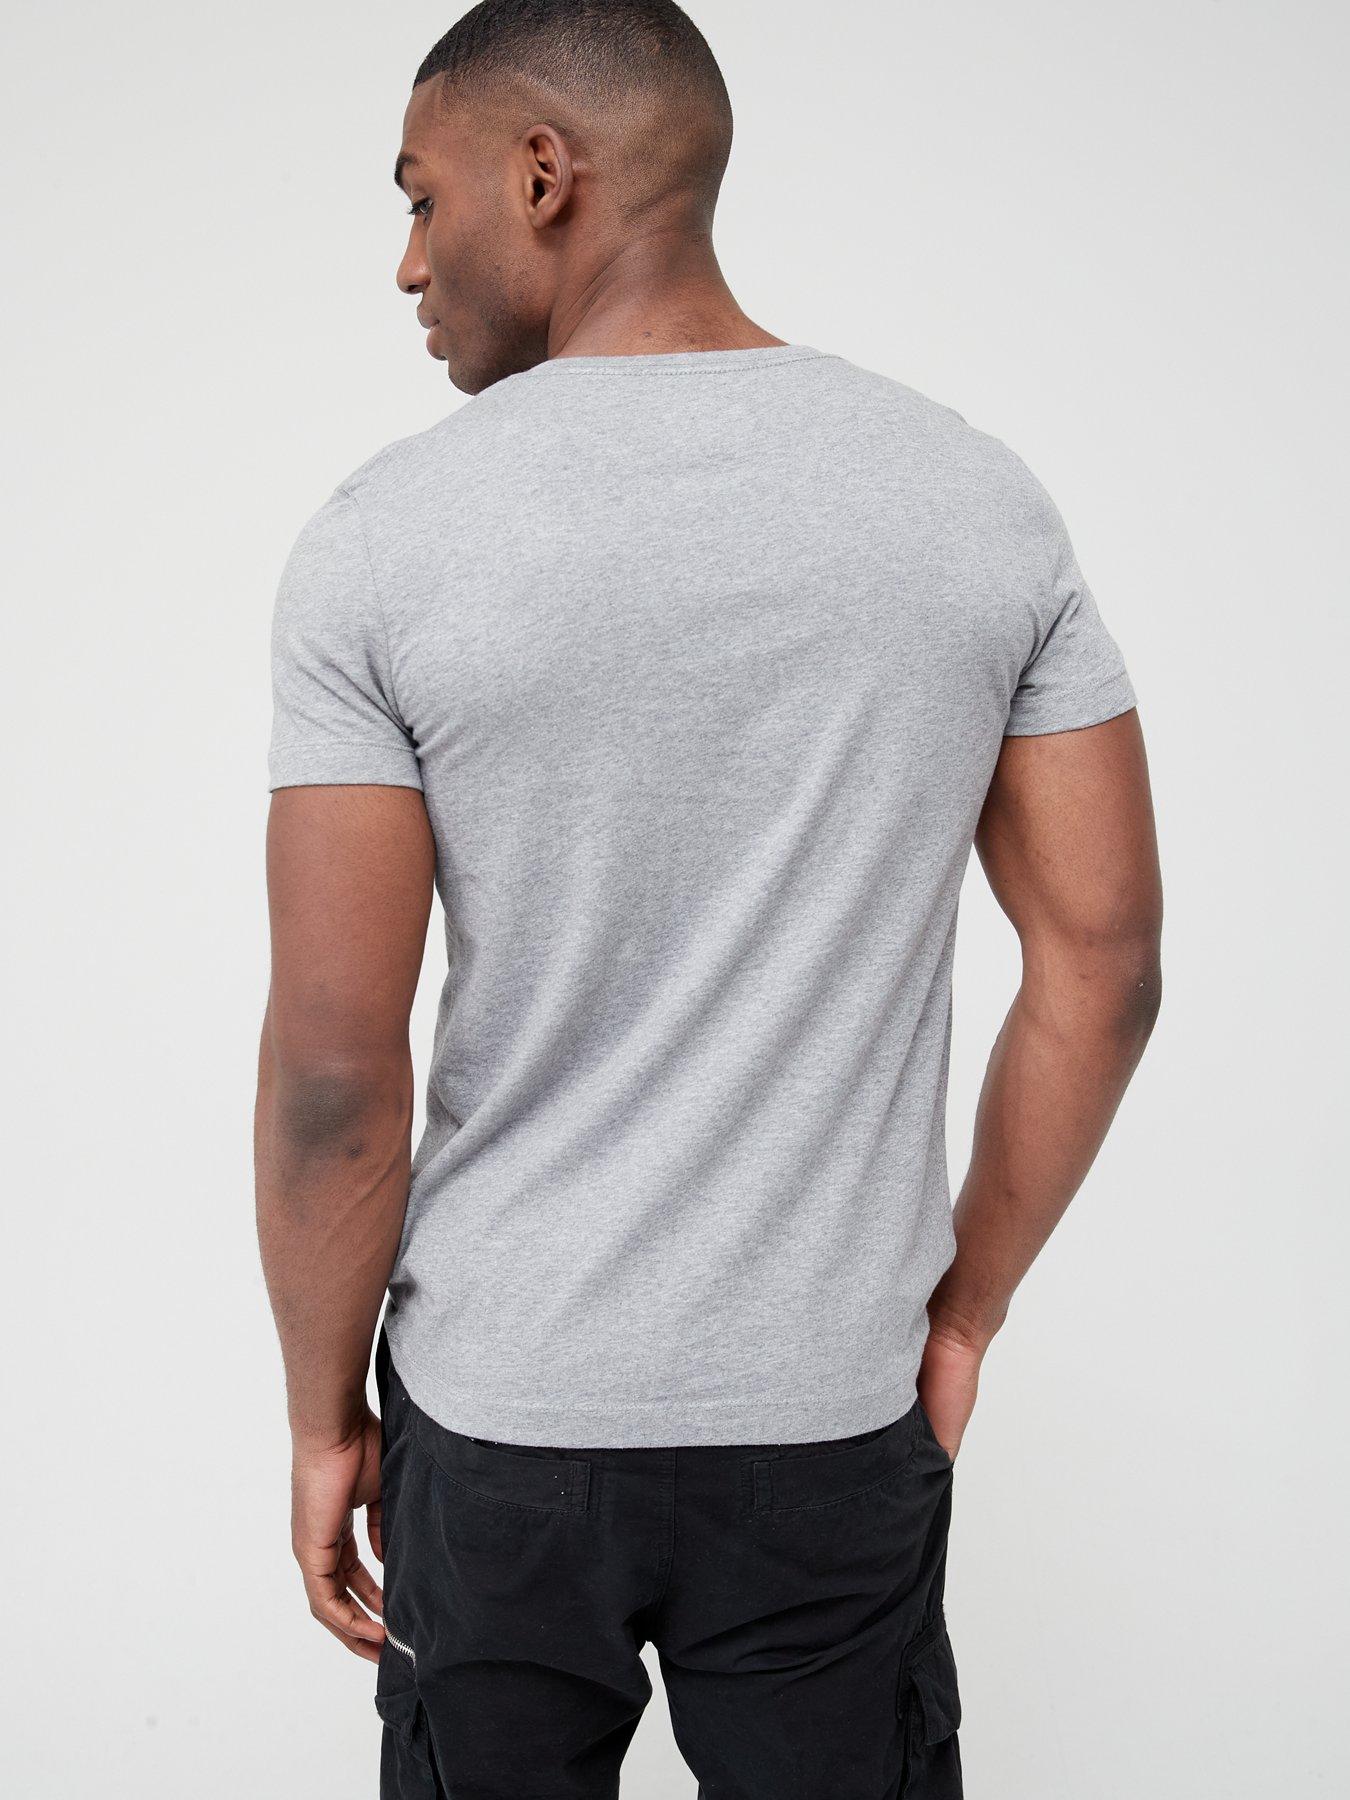 Calvin Klein Jeans institutional back logo long sleeve t-shirt white, ASOS